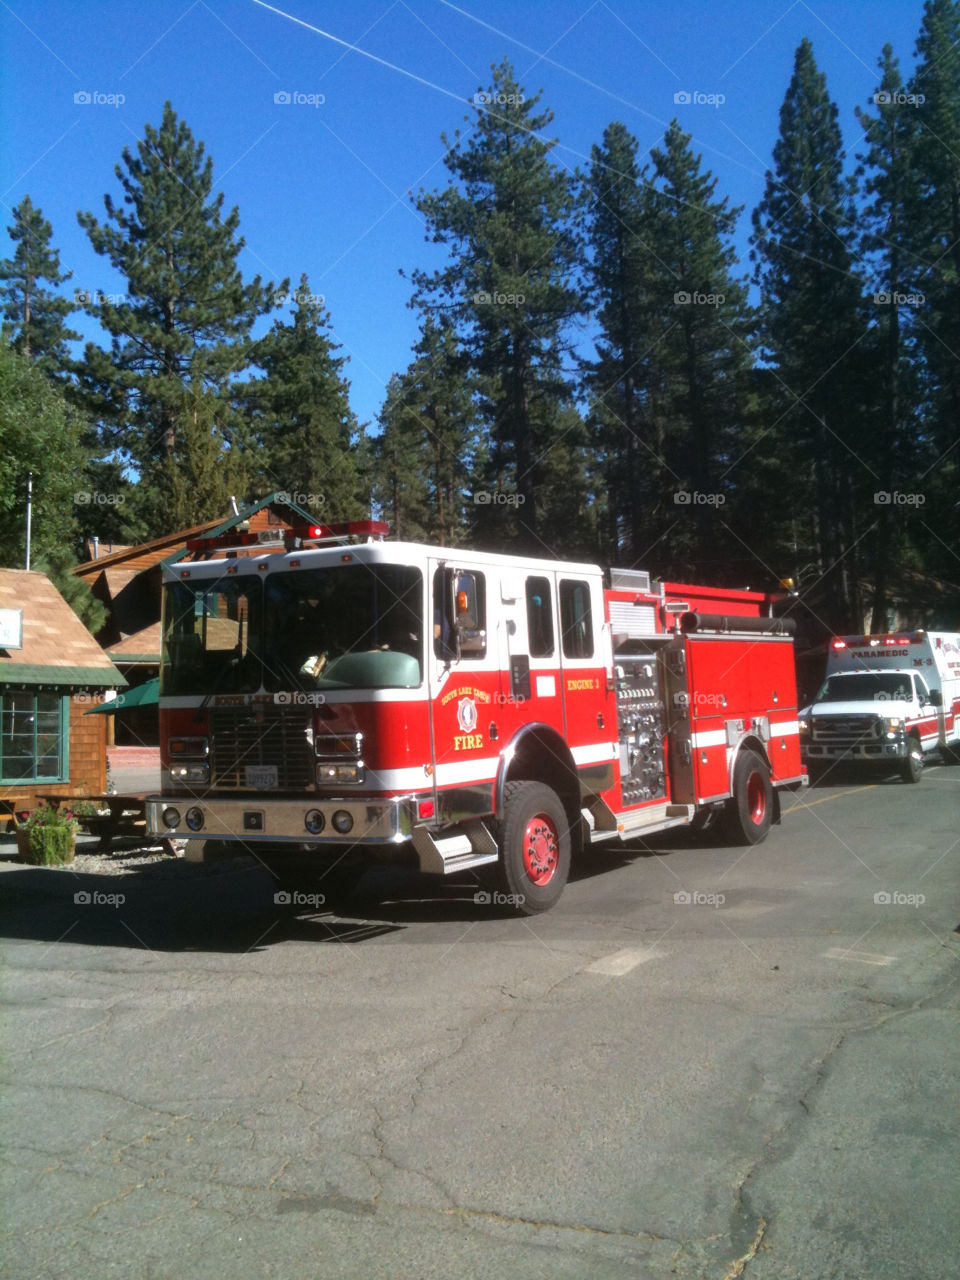 lake tahoe fire tahoe fire truck by decibellebass